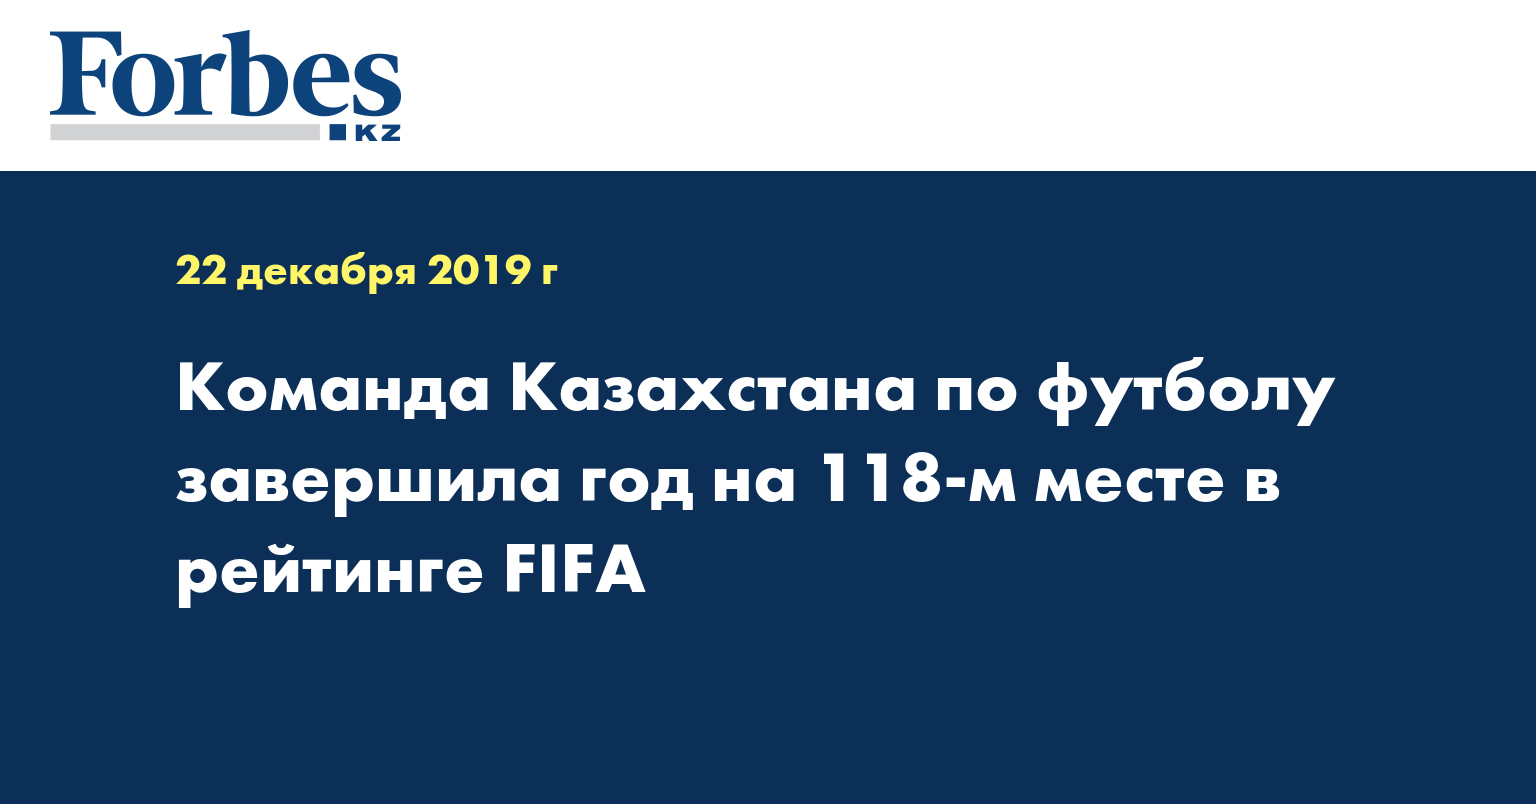 Команда Казахстана по футболу завершила год на 118-м месте в рейтинге FIFA 